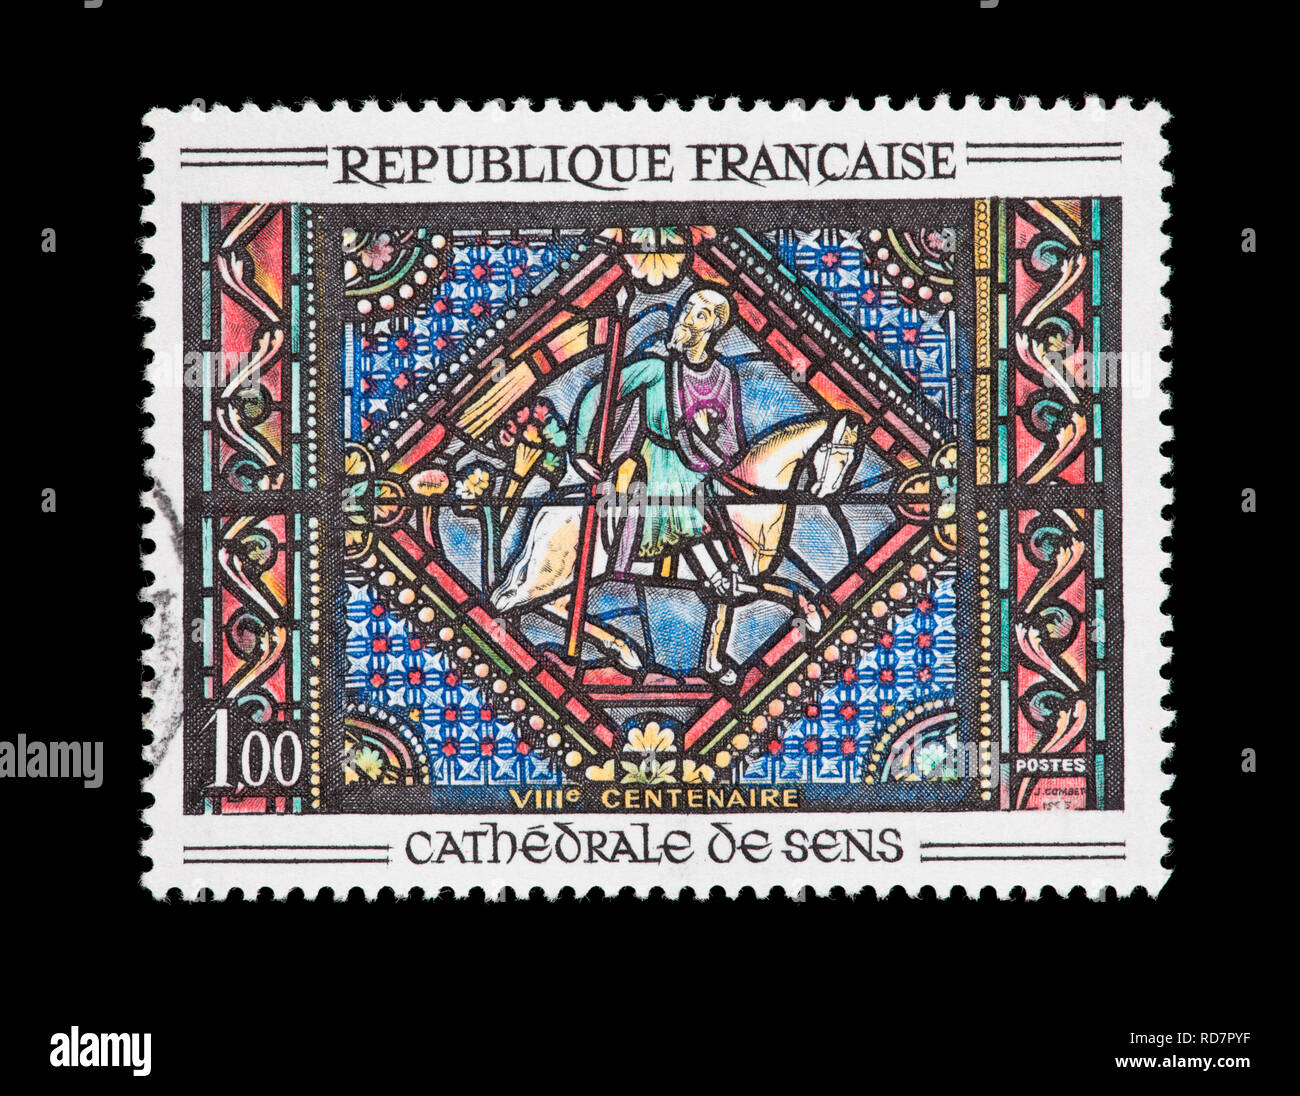 Sello de Francia representando a san Pablo en el camino de Damasco, ventana, Catedral de Sens. Foto de stock